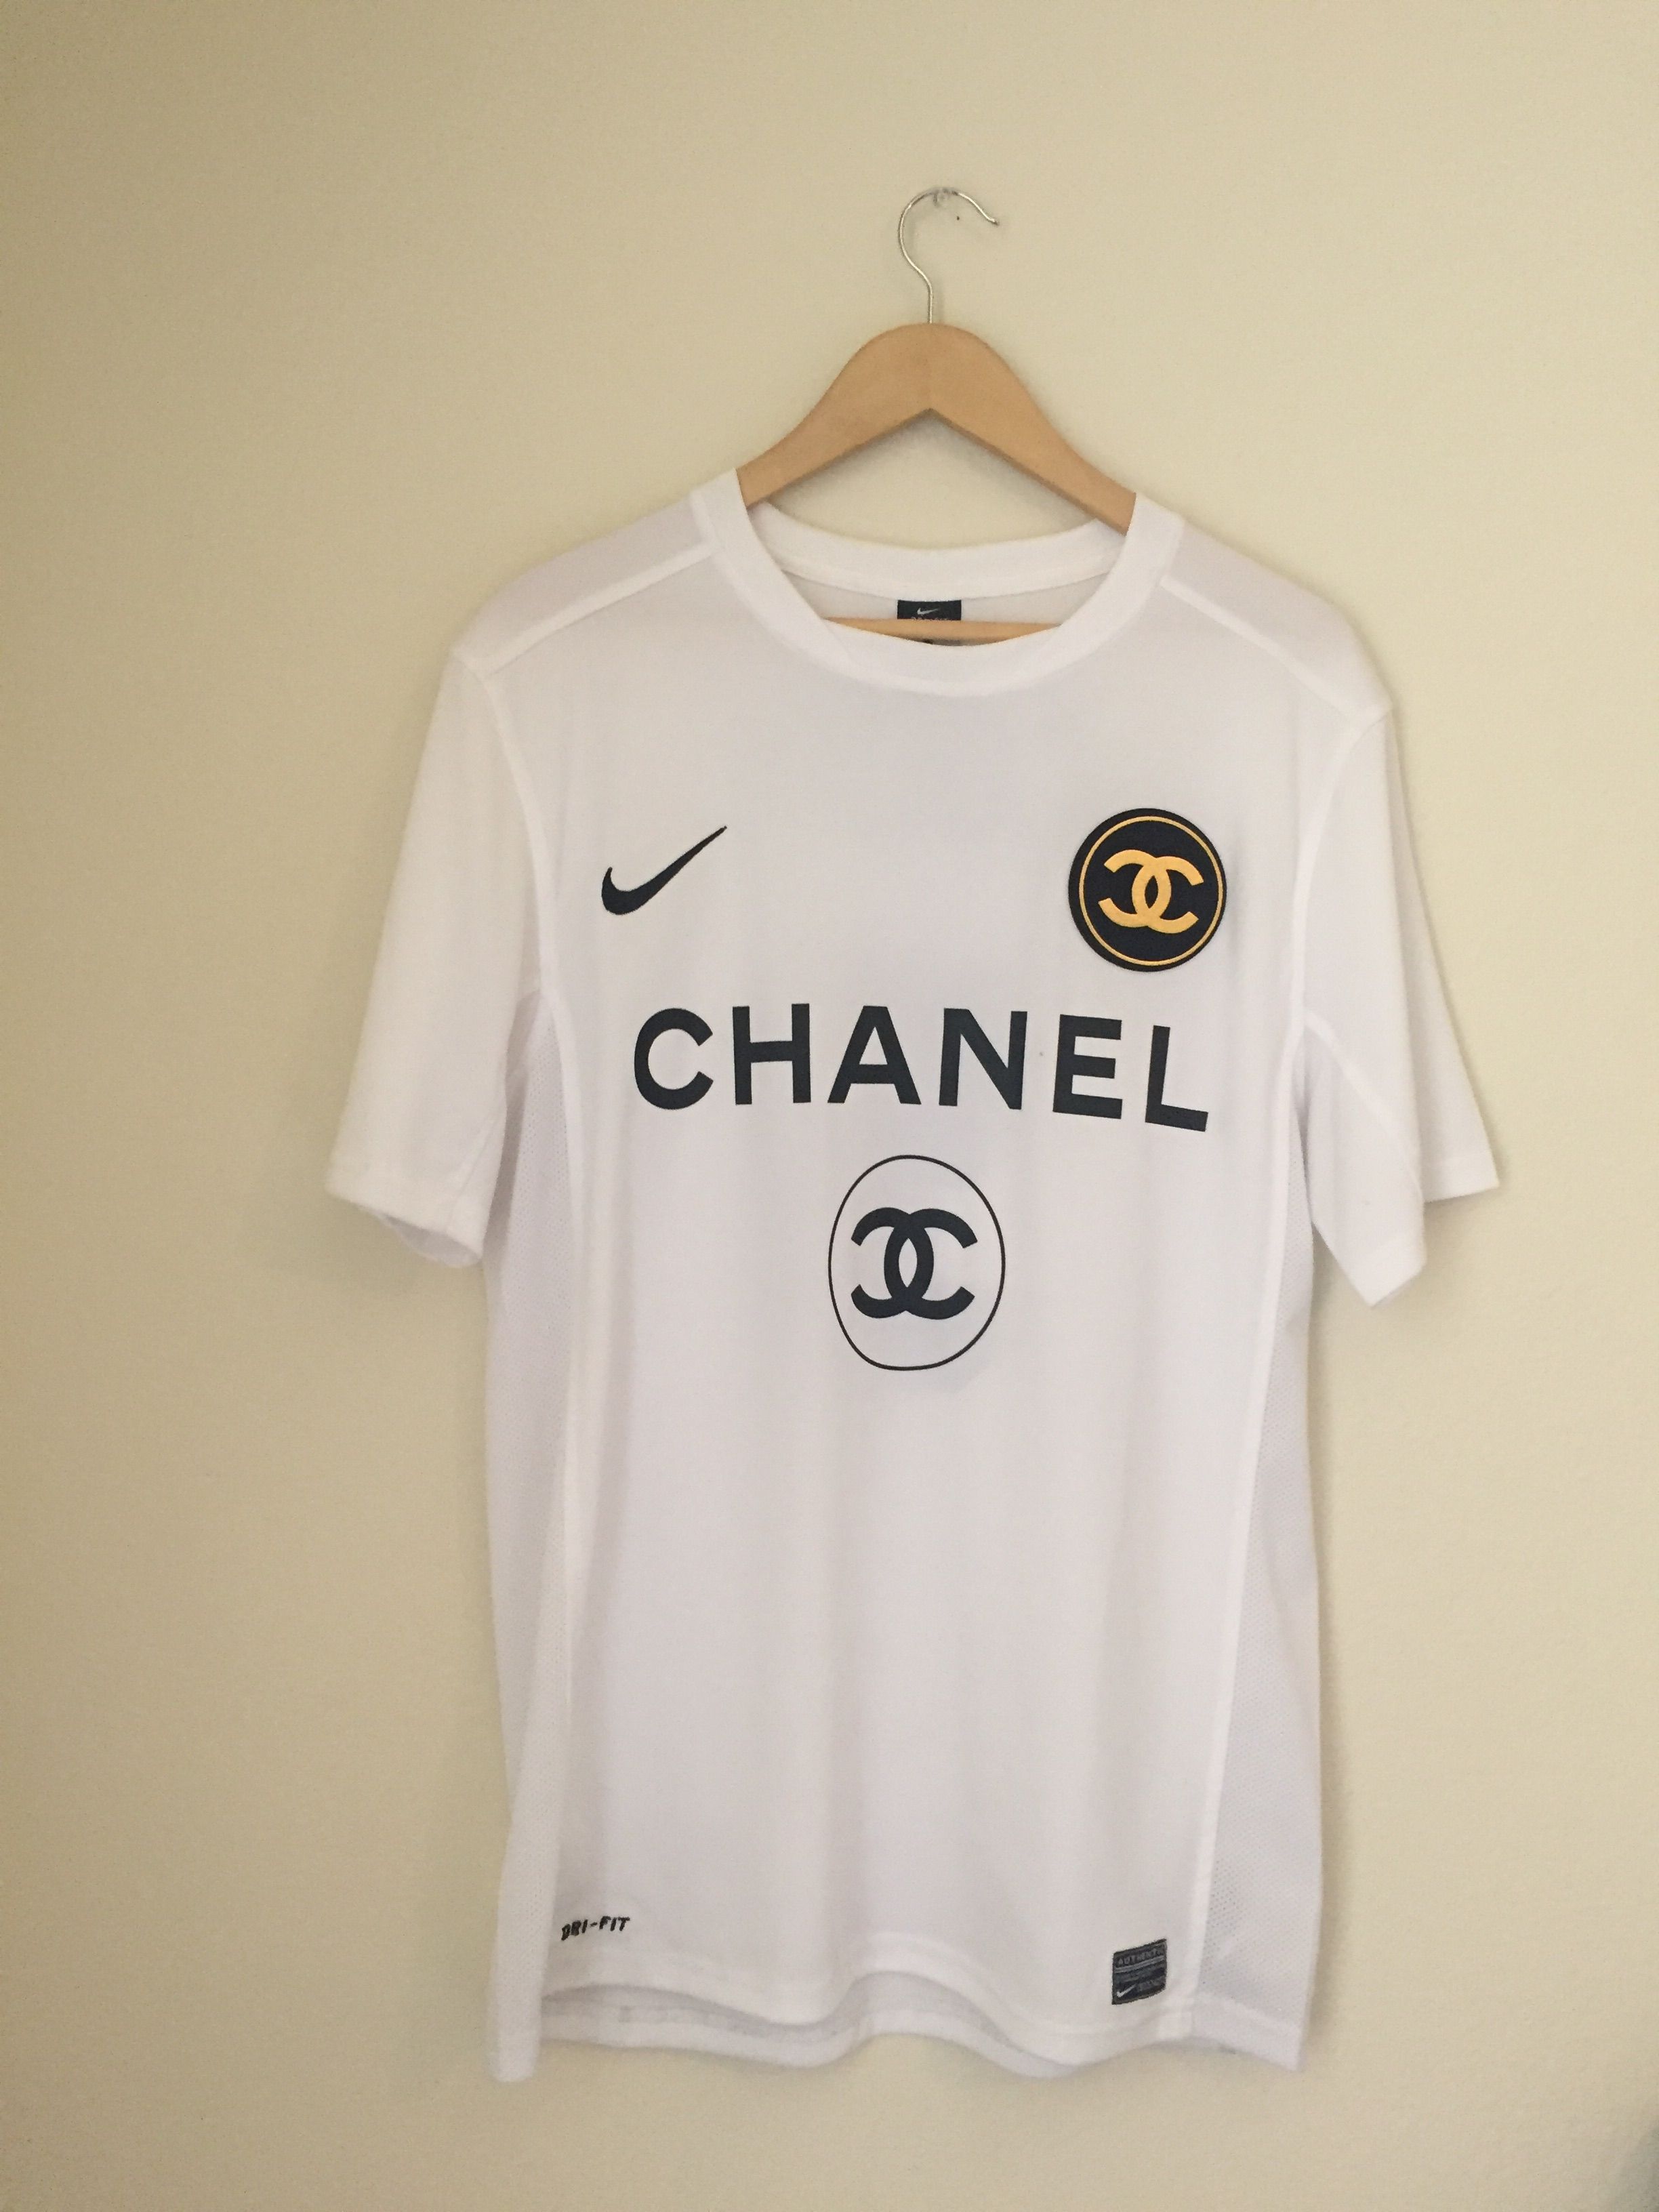 Nike Nike X Chanel Soccer Jersey